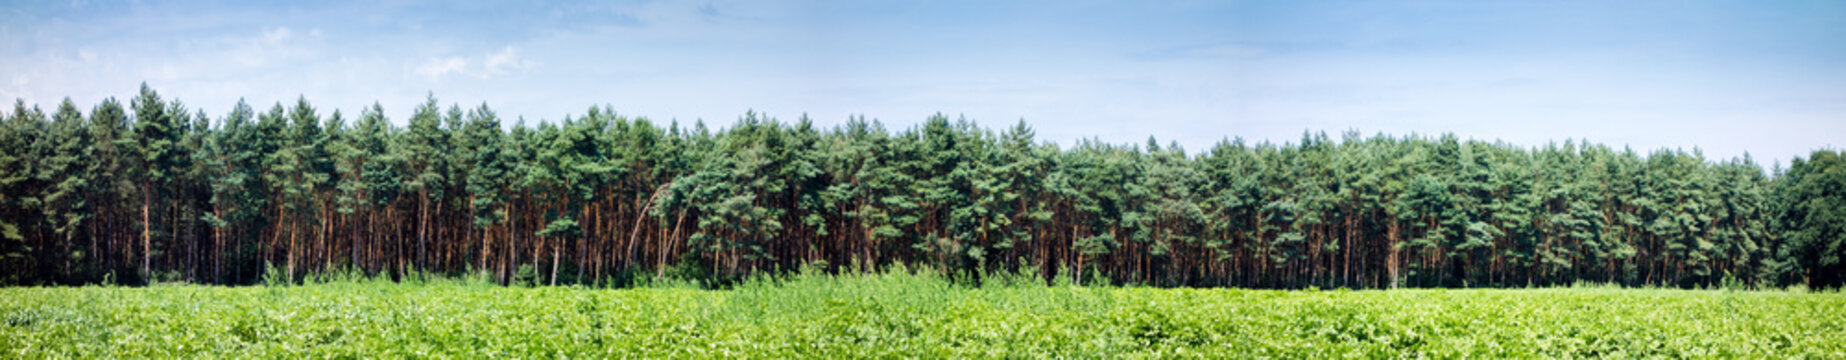 Panorama, Kiefernwald und Landwirtschaft, Hintergrund, Forstwirtschaft, Deutschland